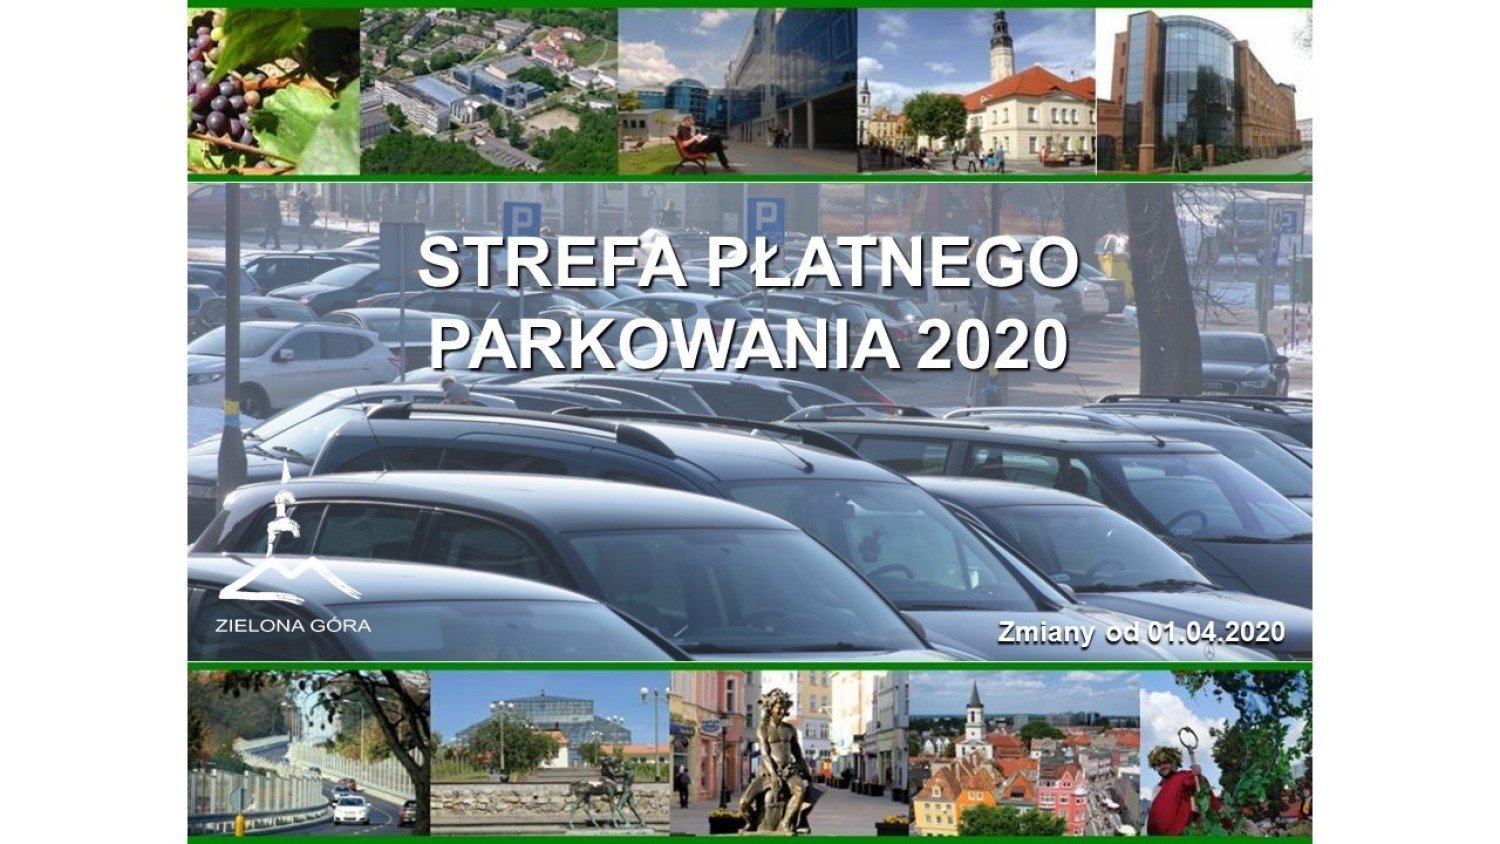 Strefa Platnego Parkowania W Zielonej Gorze Zobacz Co Sie Zmieni Od 01 04 2020 R Cennik Mapa Strefy Zielona Gora Nasze Miasto